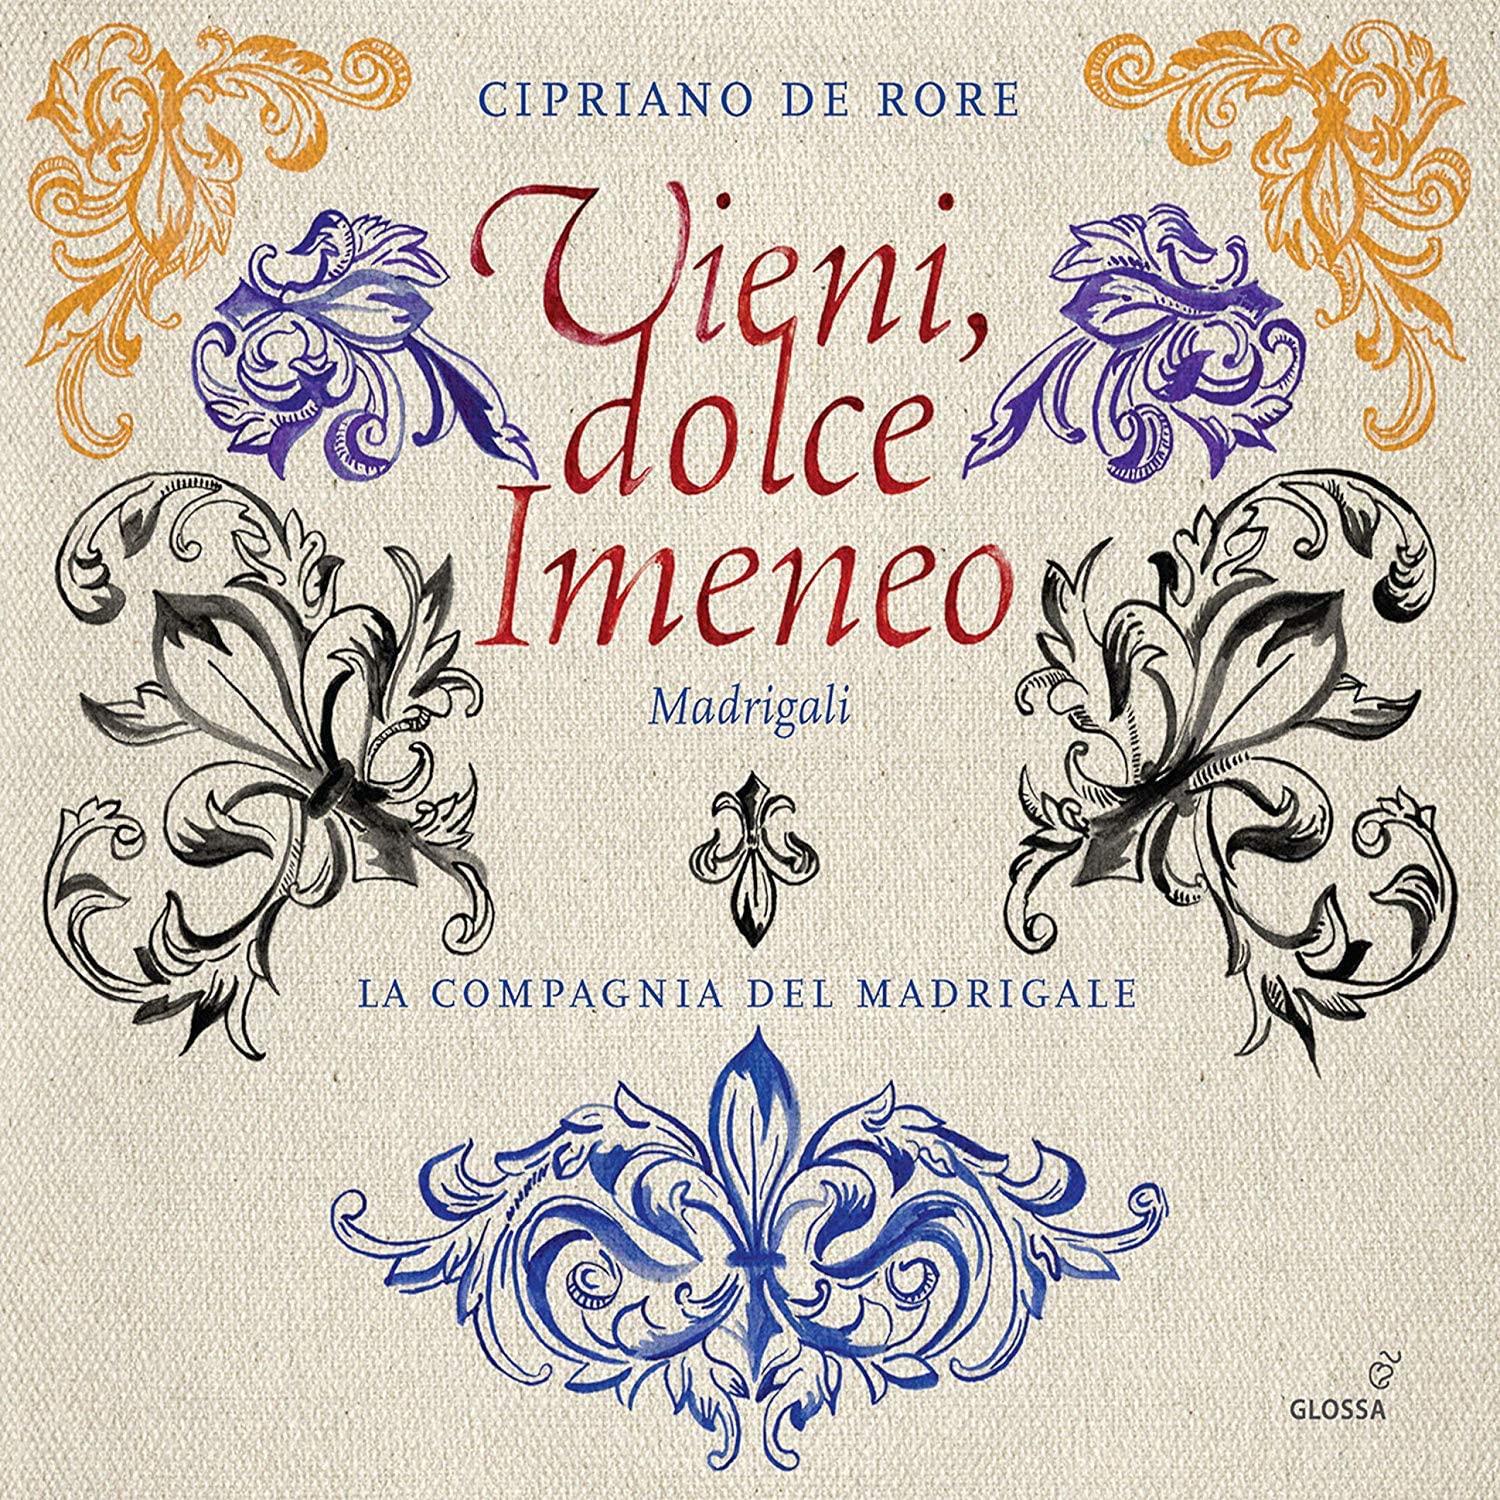 Vieni Imeneo Madrigals by Cipriano da Rore CD cover